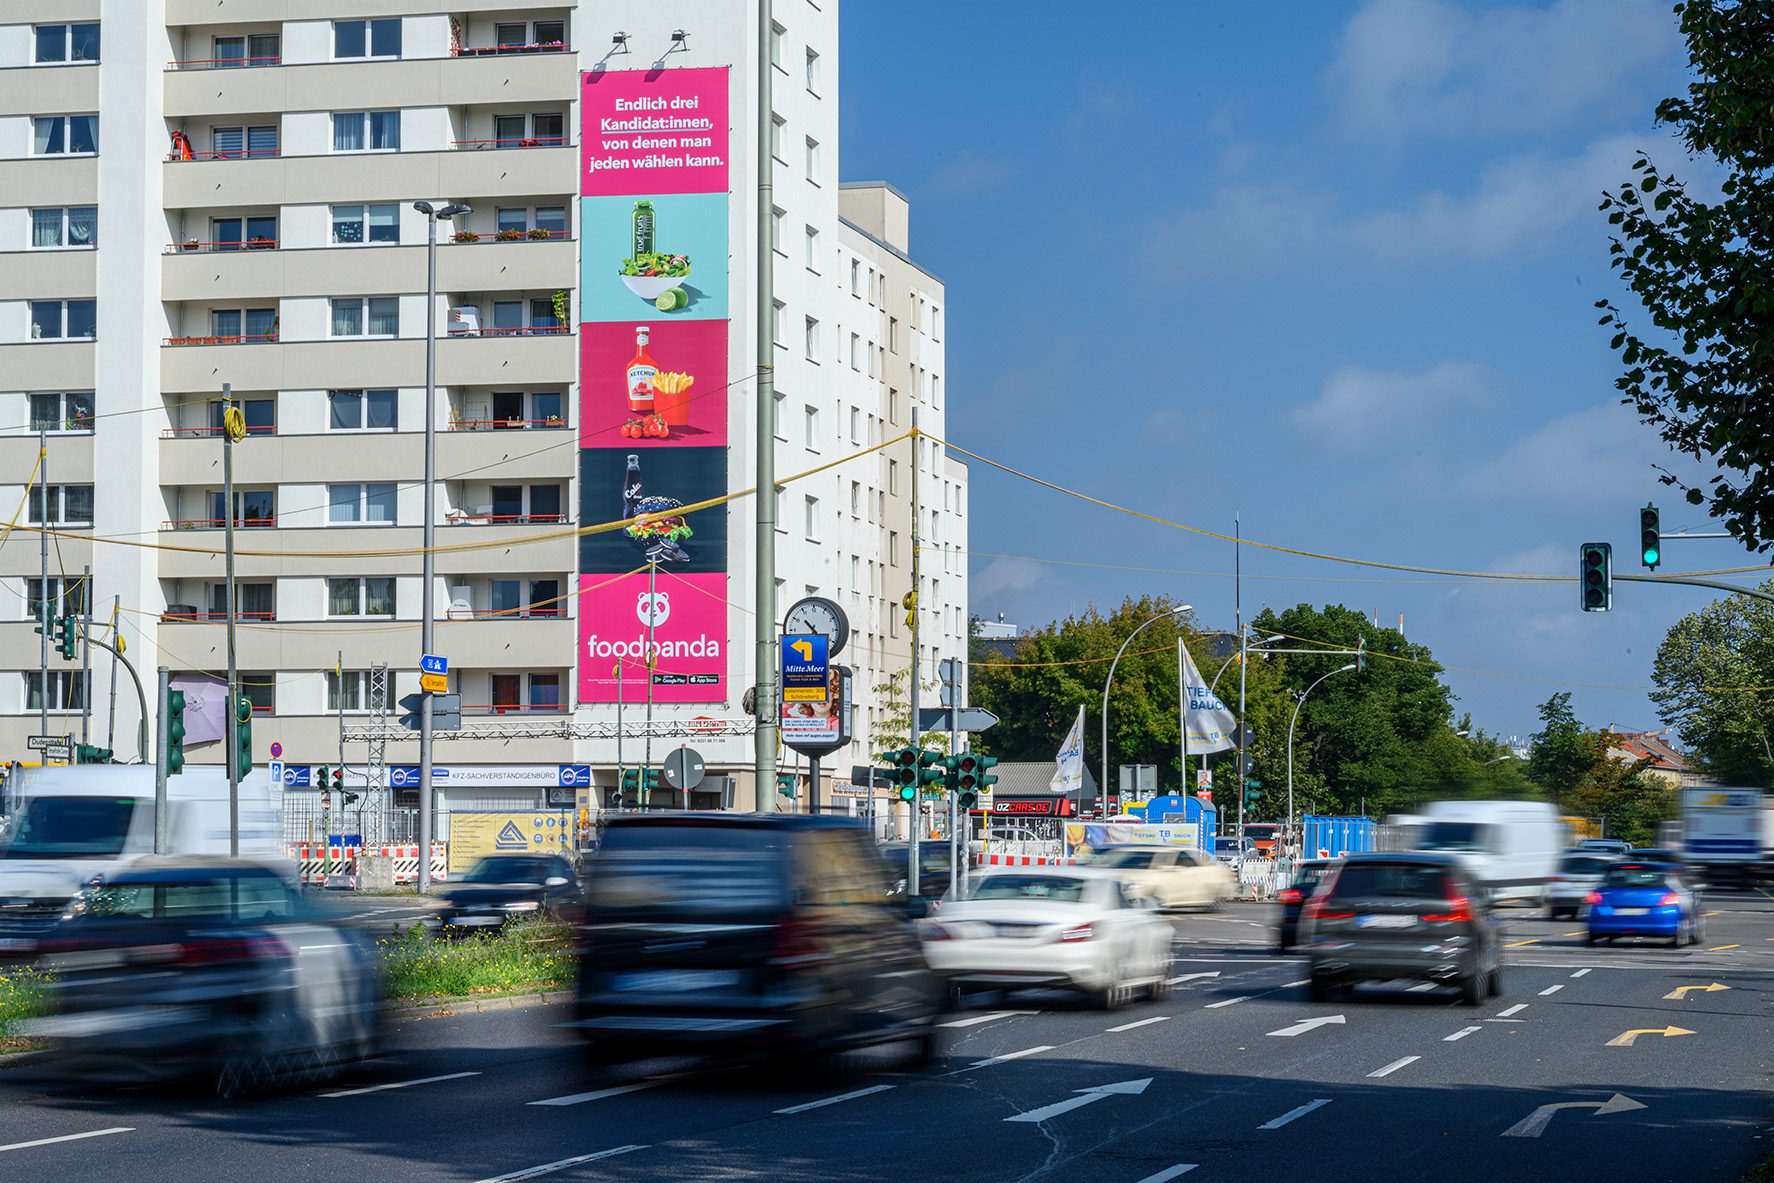 OOH Werbung von Delivery Hero in Berlin Kreuzberg